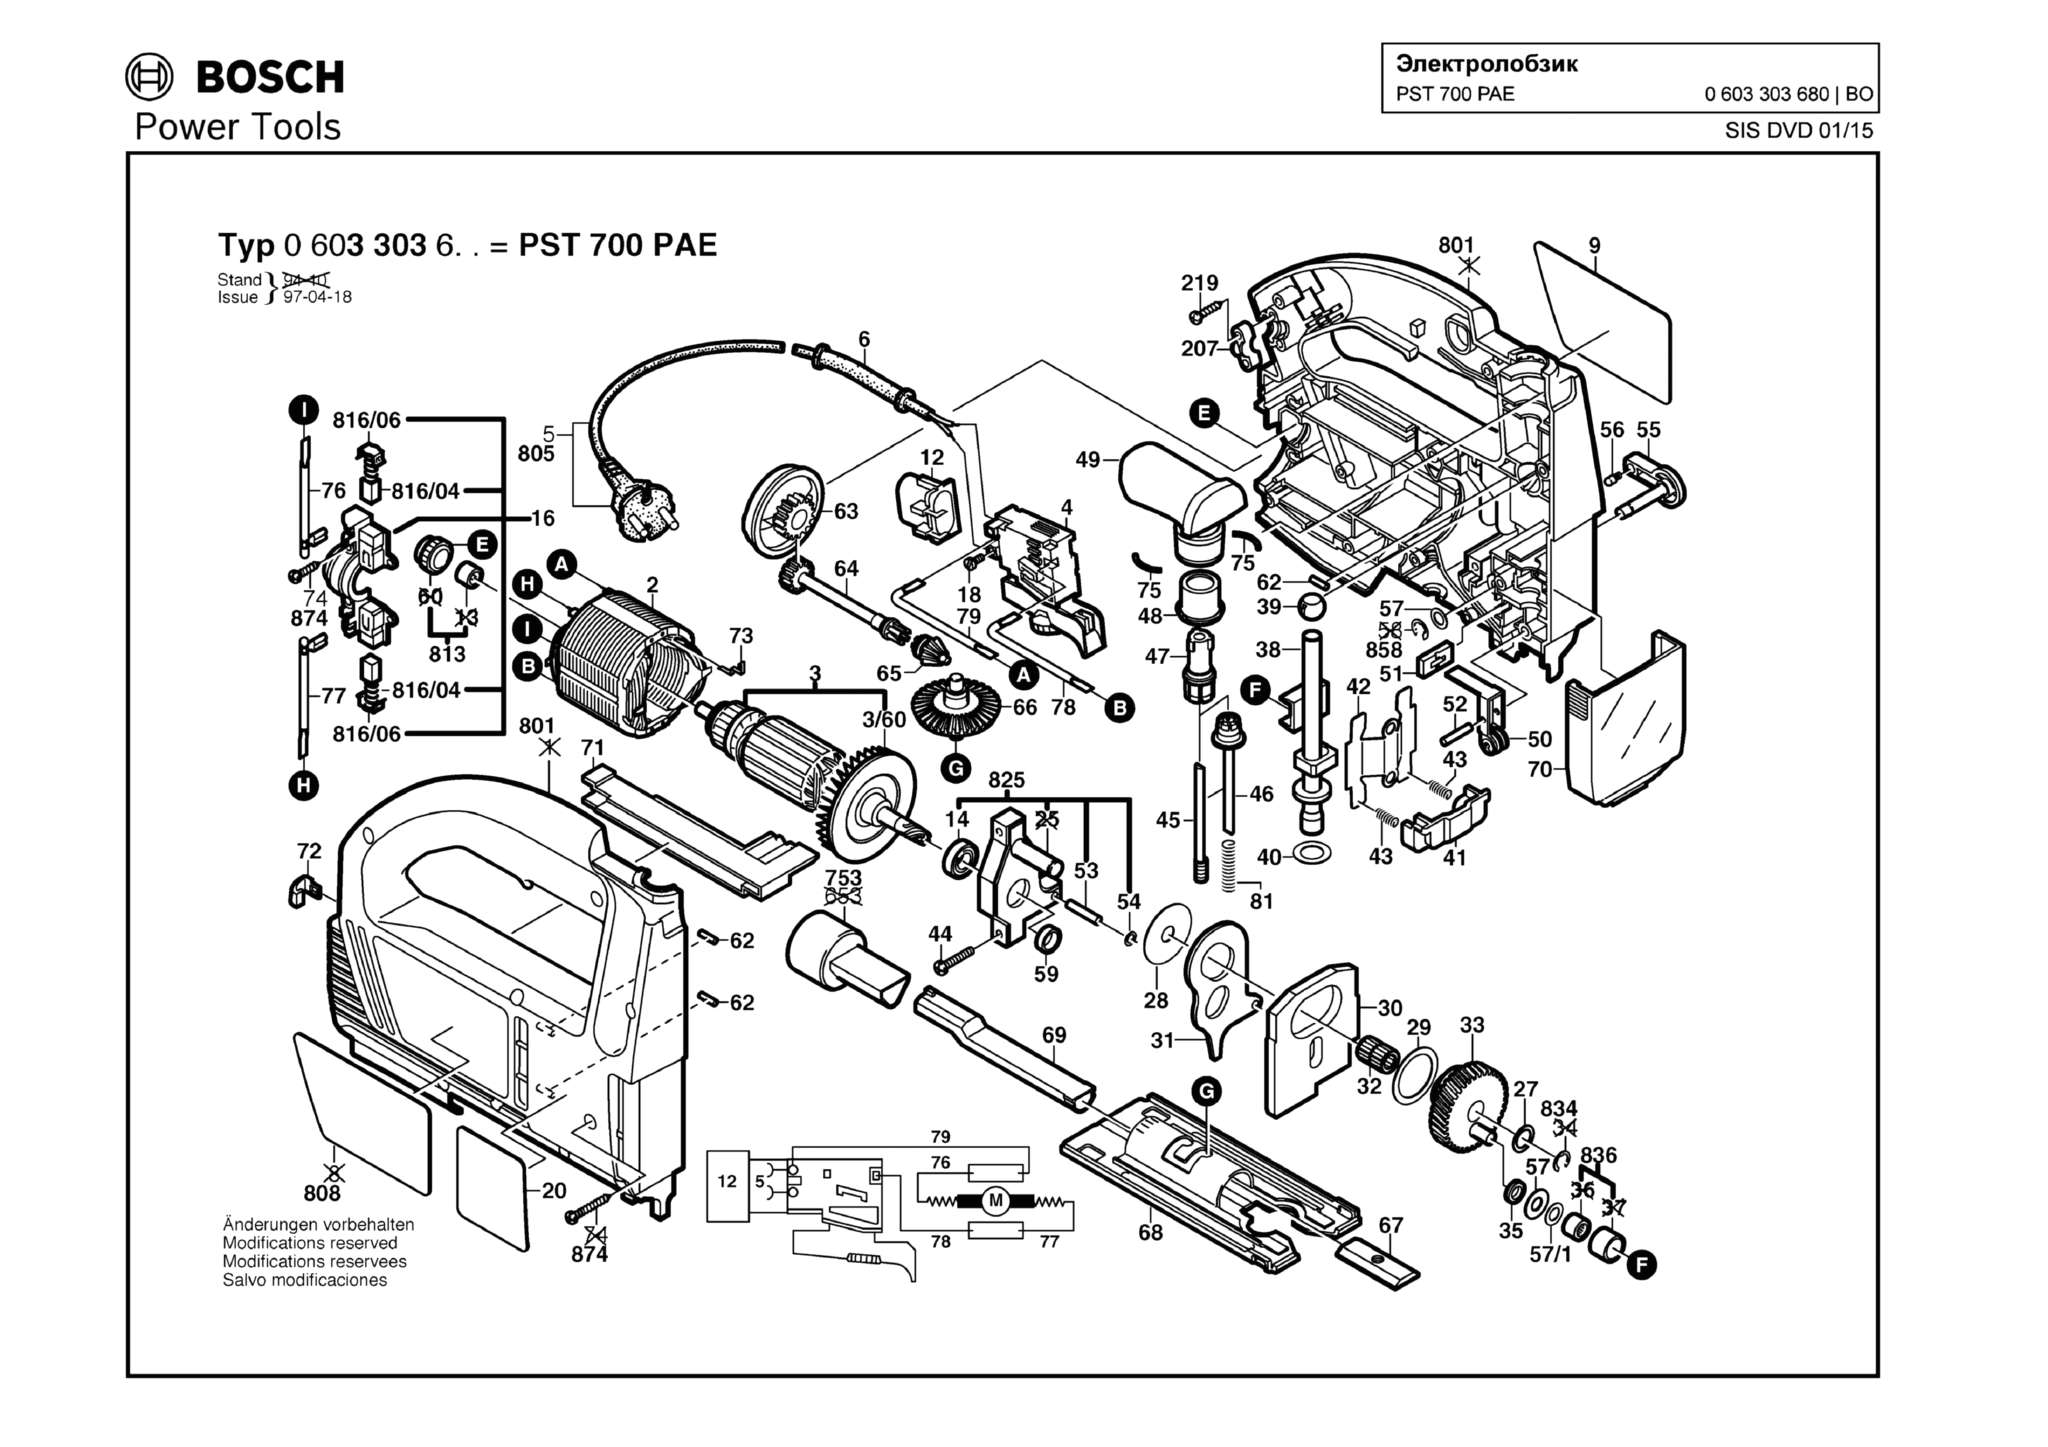 Запчасти, схема и деталировка Bosch PST 700 PAE (ТИП 0603303680)